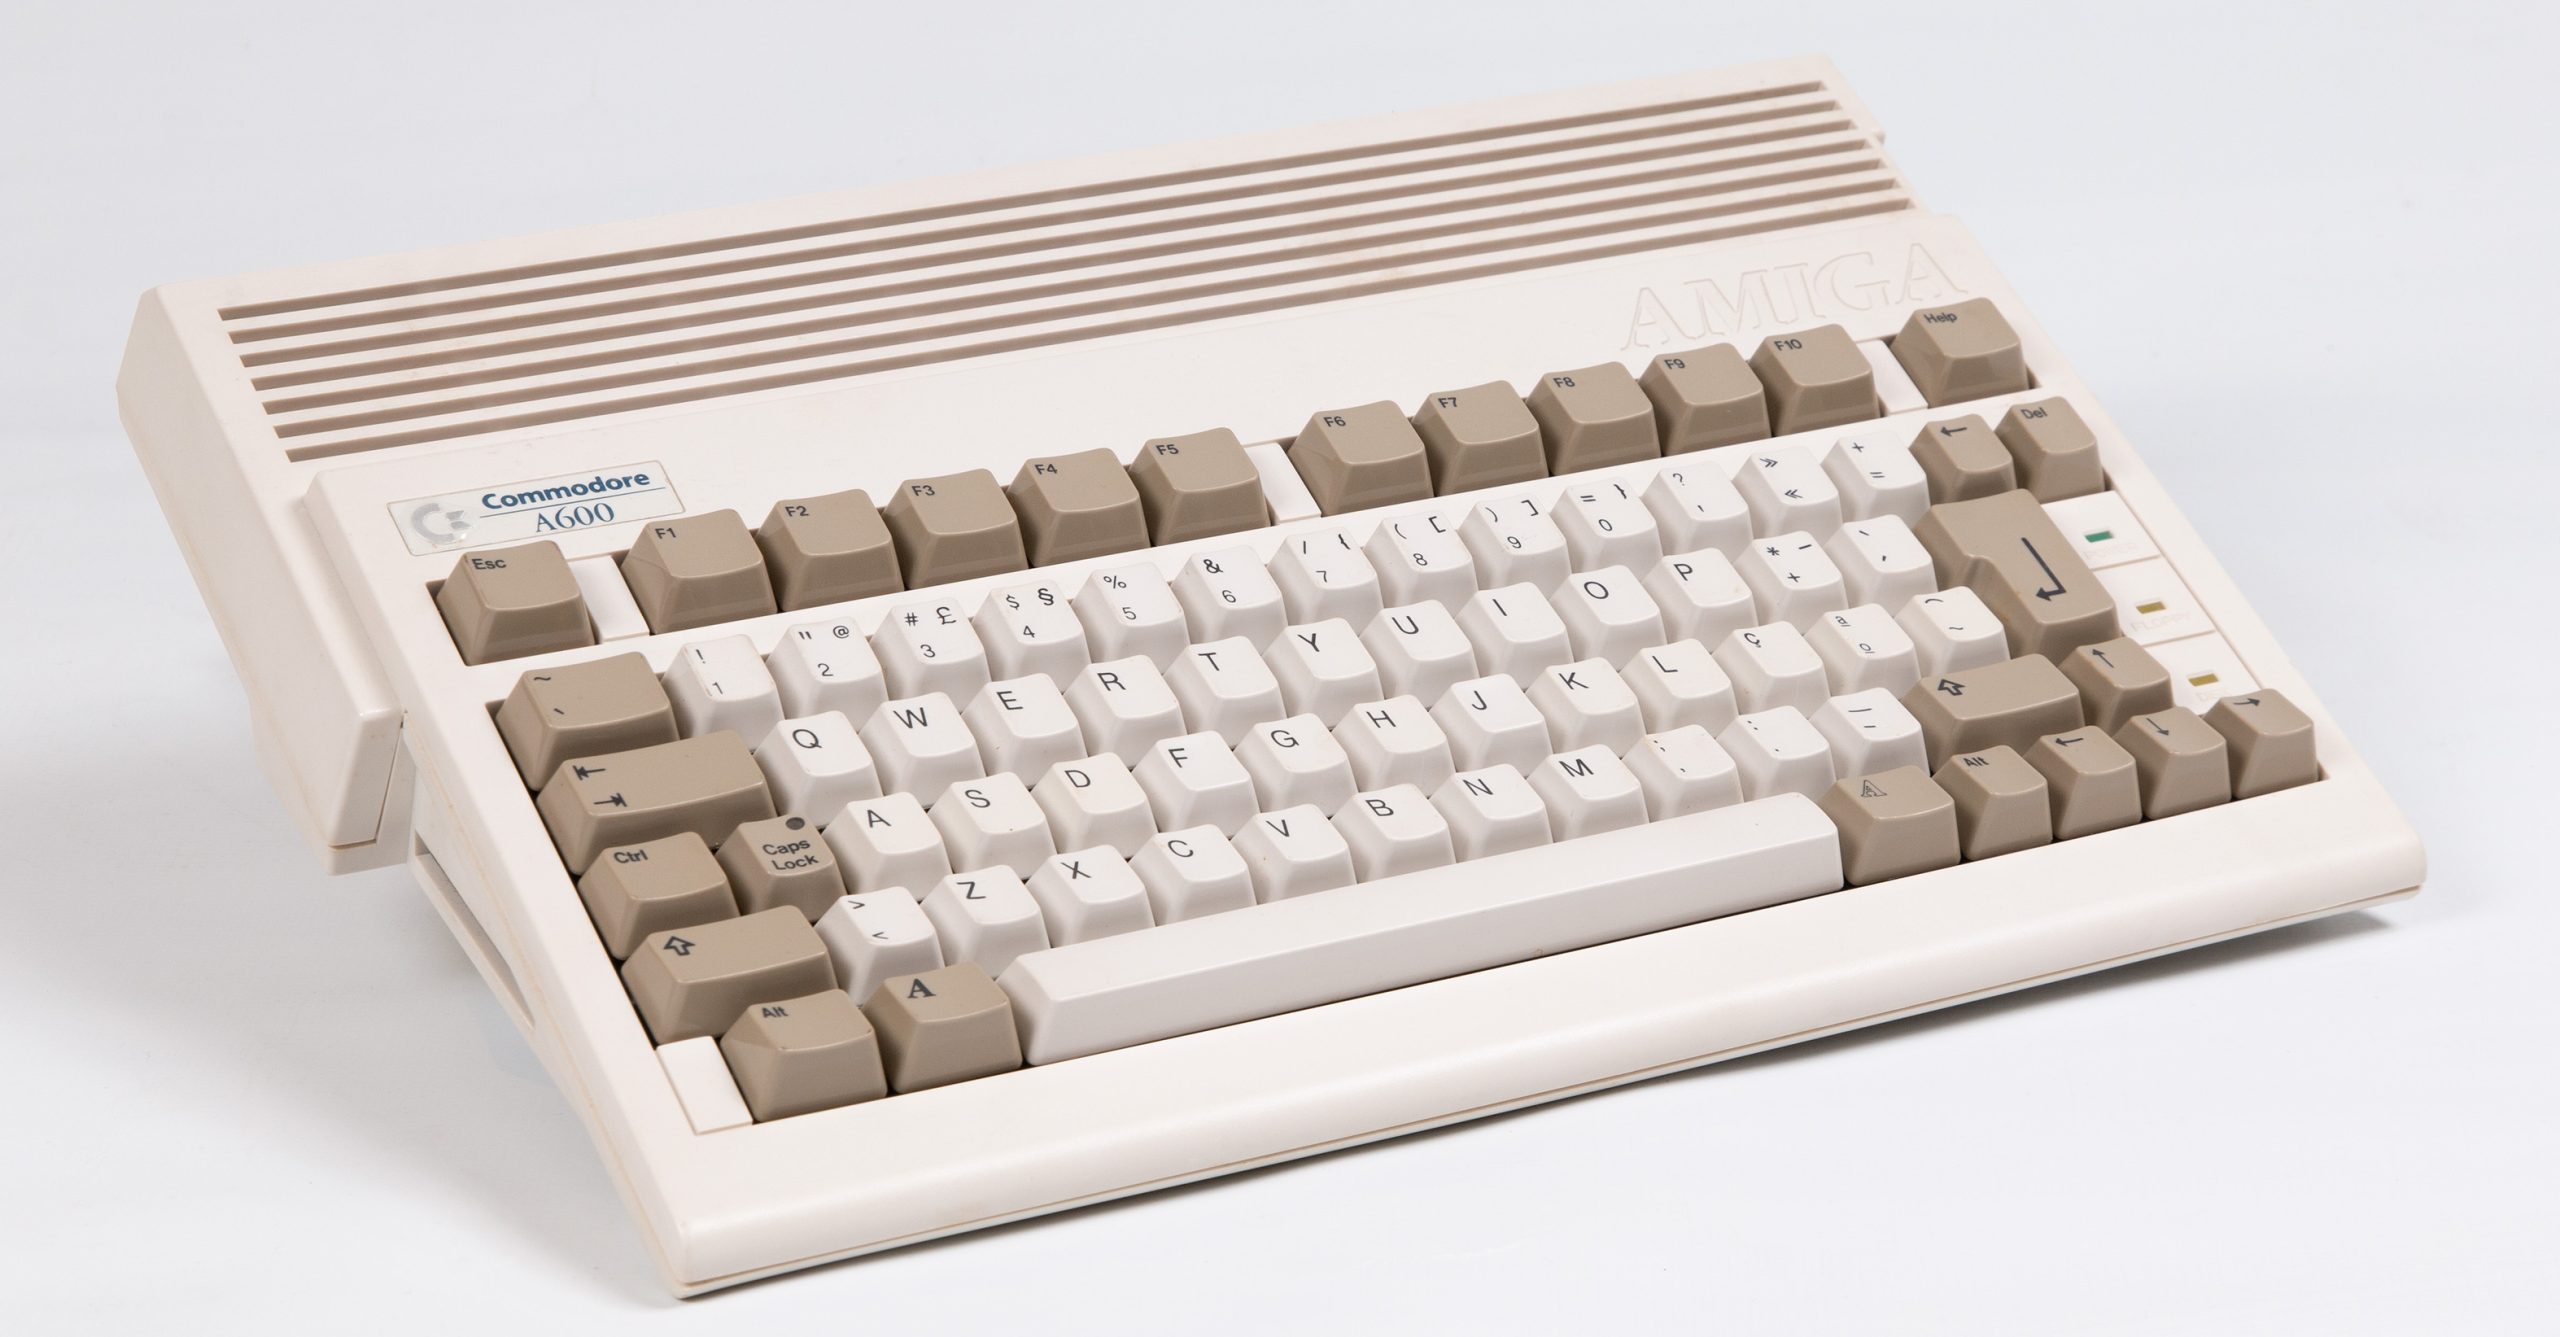 Commodore A600